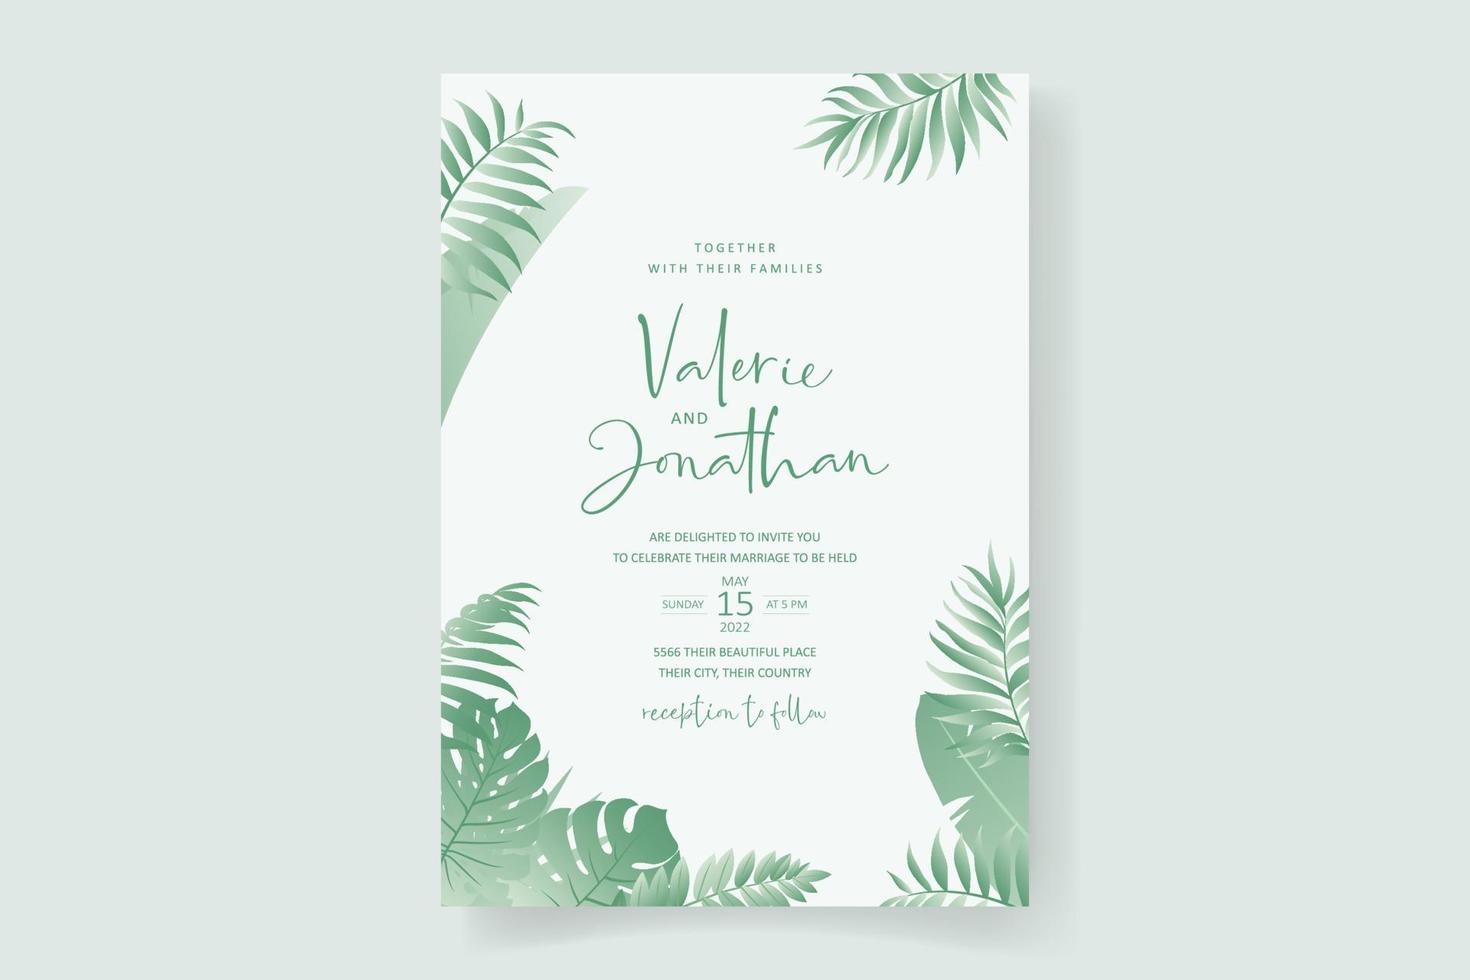 sommar bröllop kortdesign med tropiska löv prydnad vektor